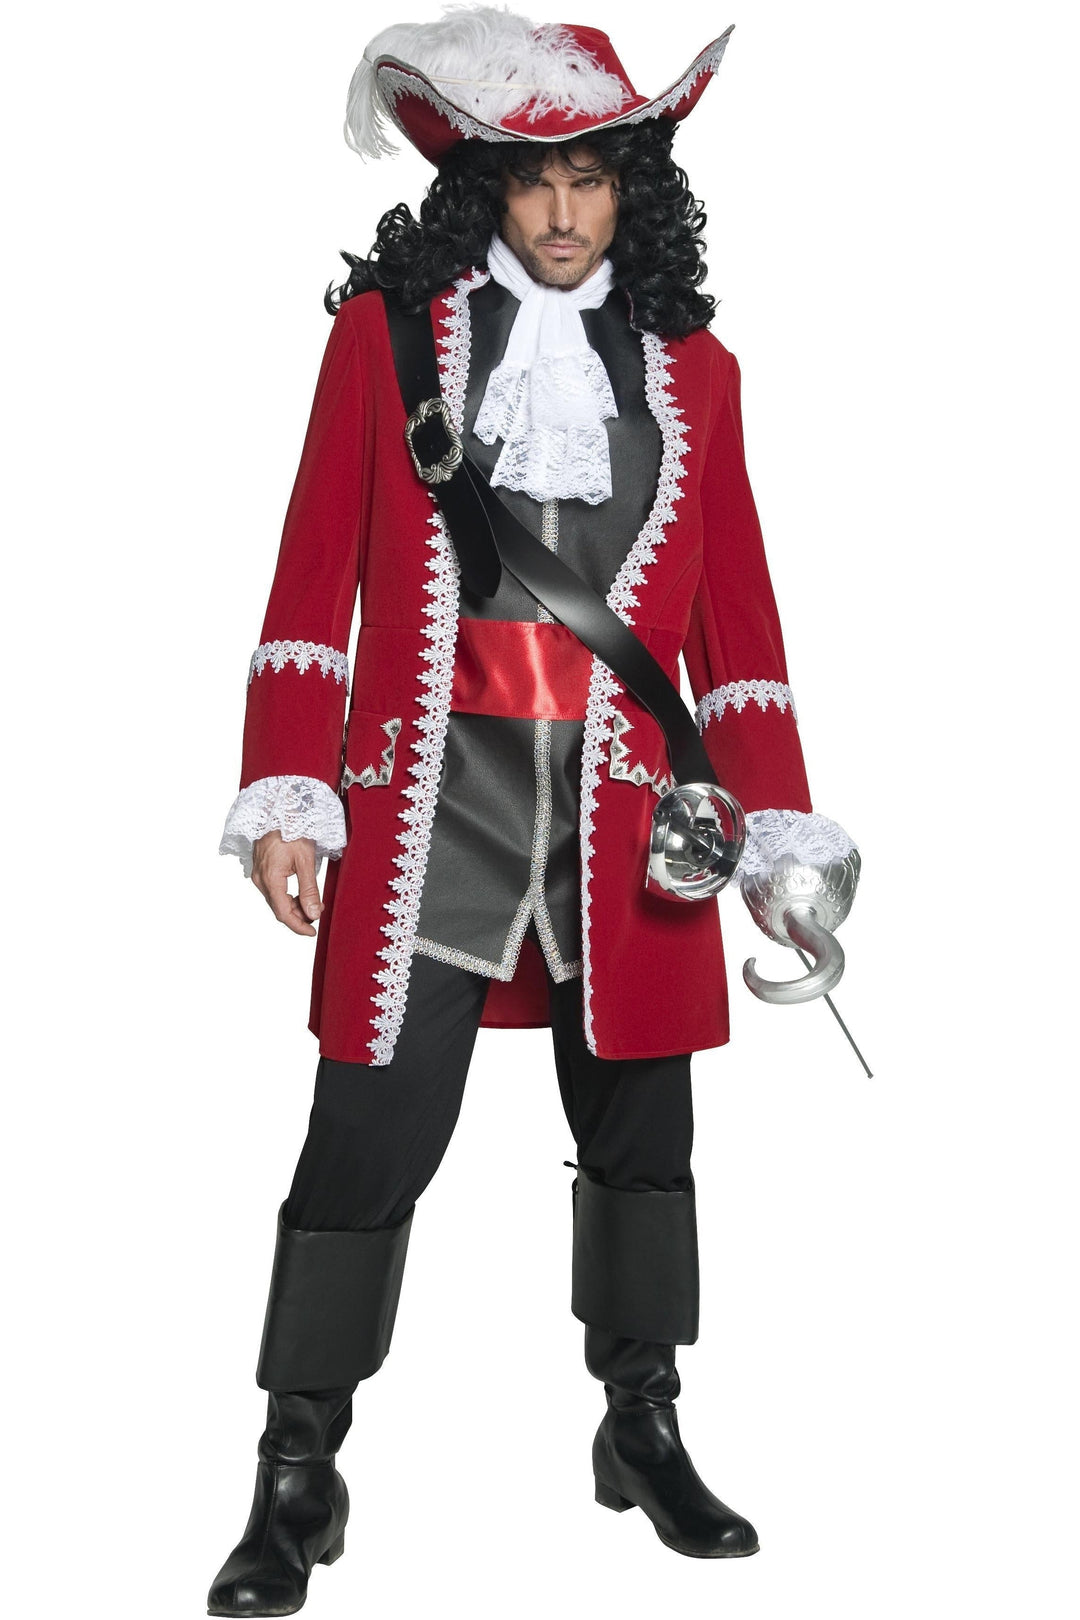 Deluxe Authentic Pirate Captain Costume